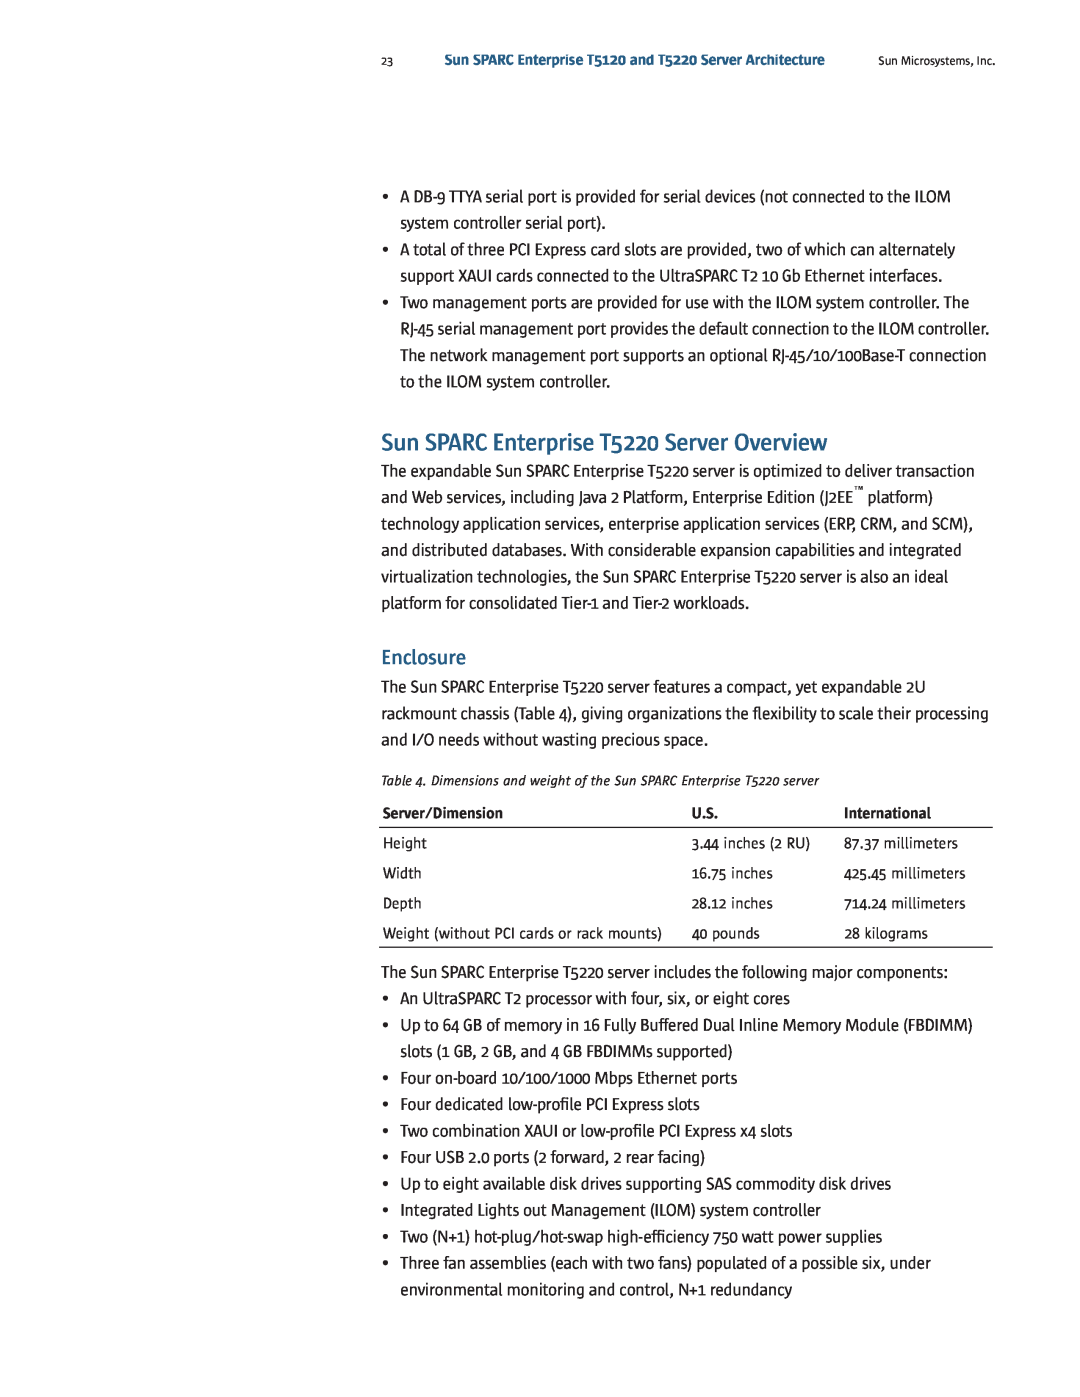 Sun Microsystems T5120 manual Sun SPARC Enterprise T5220 Server Overview, Enclosure 